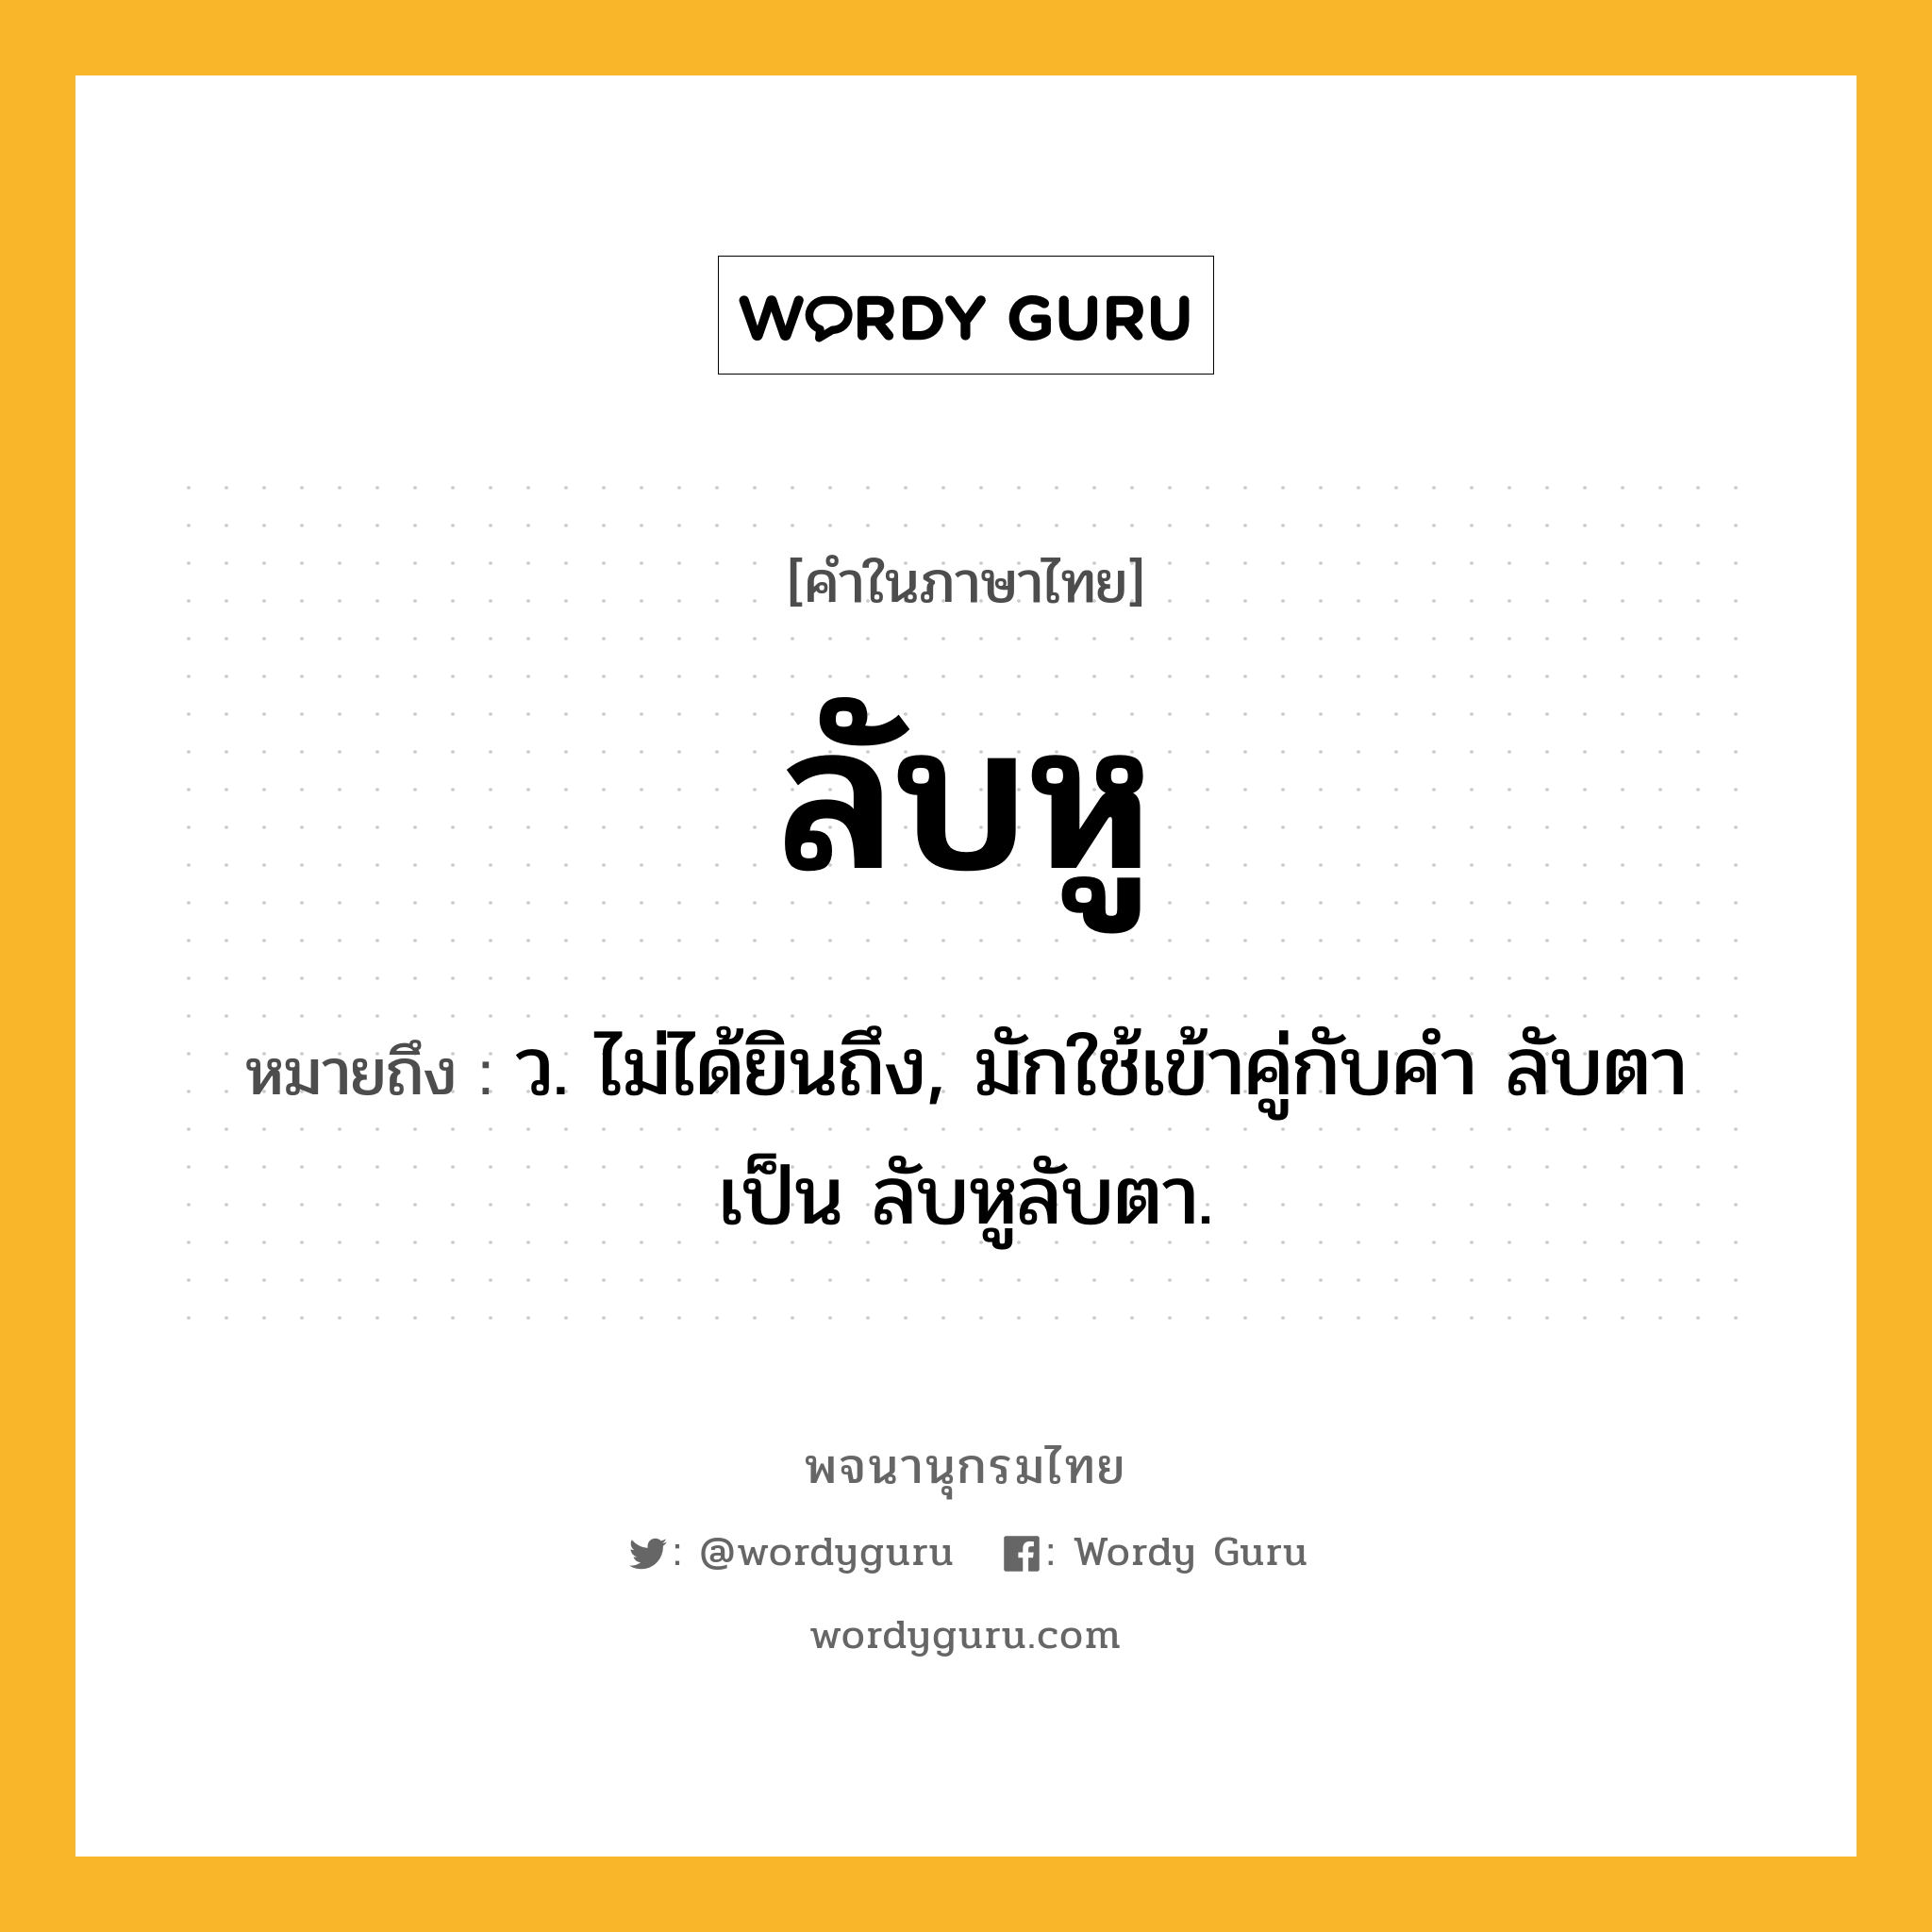 ลับหู หมายถึงอะไร?, คำในภาษาไทย ลับหู หมายถึง ว. ไม่ได้ยินถึง, มักใช้เข้าคู่กับคำ ลับตา เป็น ลับหูลับตา.